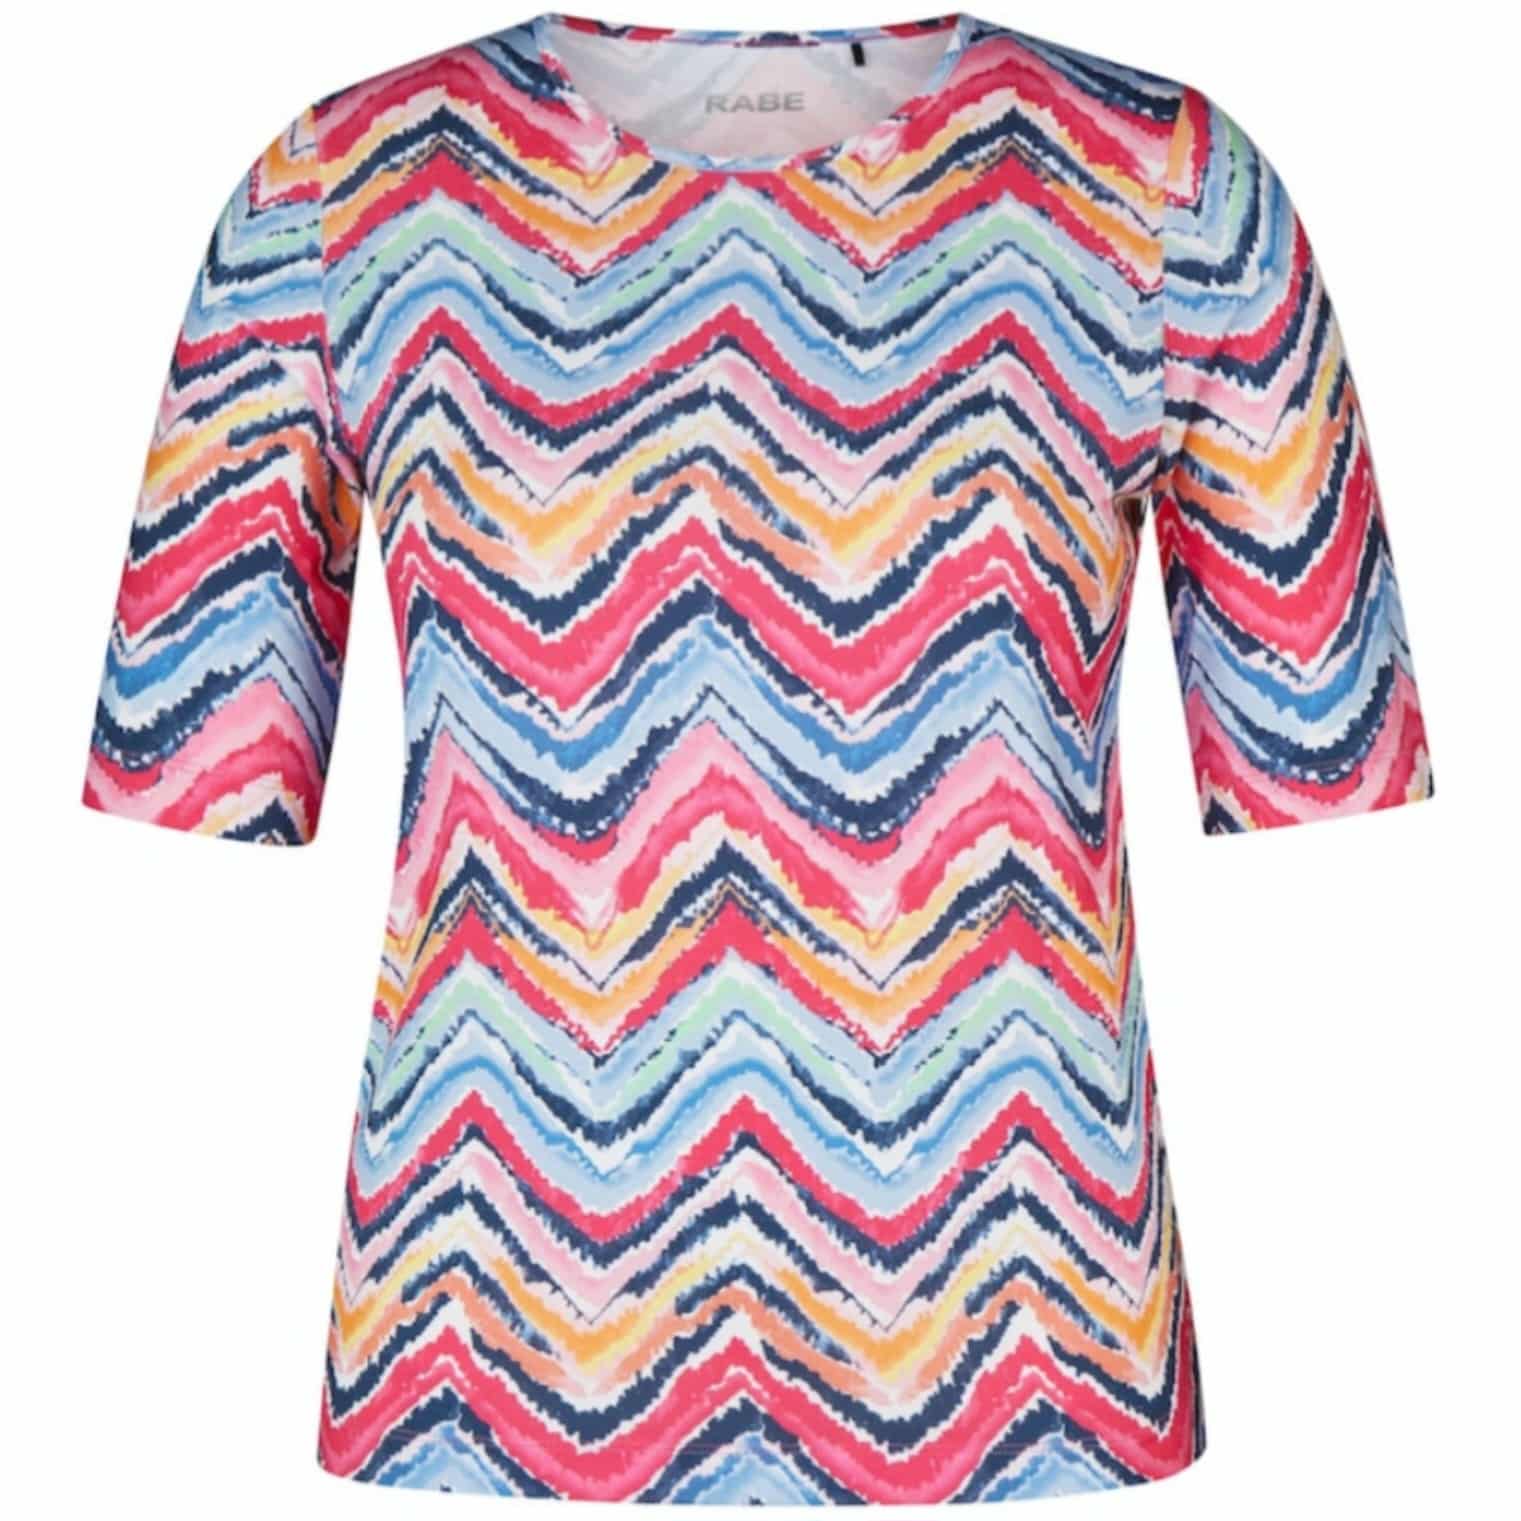 T-Shirt für Damen mit Kurzarm Artikel 52-122359 von Rabe Moden mit Zick-Zack Muster in Pink und Blau bei Mode Sabine Lemke in Winnenden oder im Onlineshop einkaufen